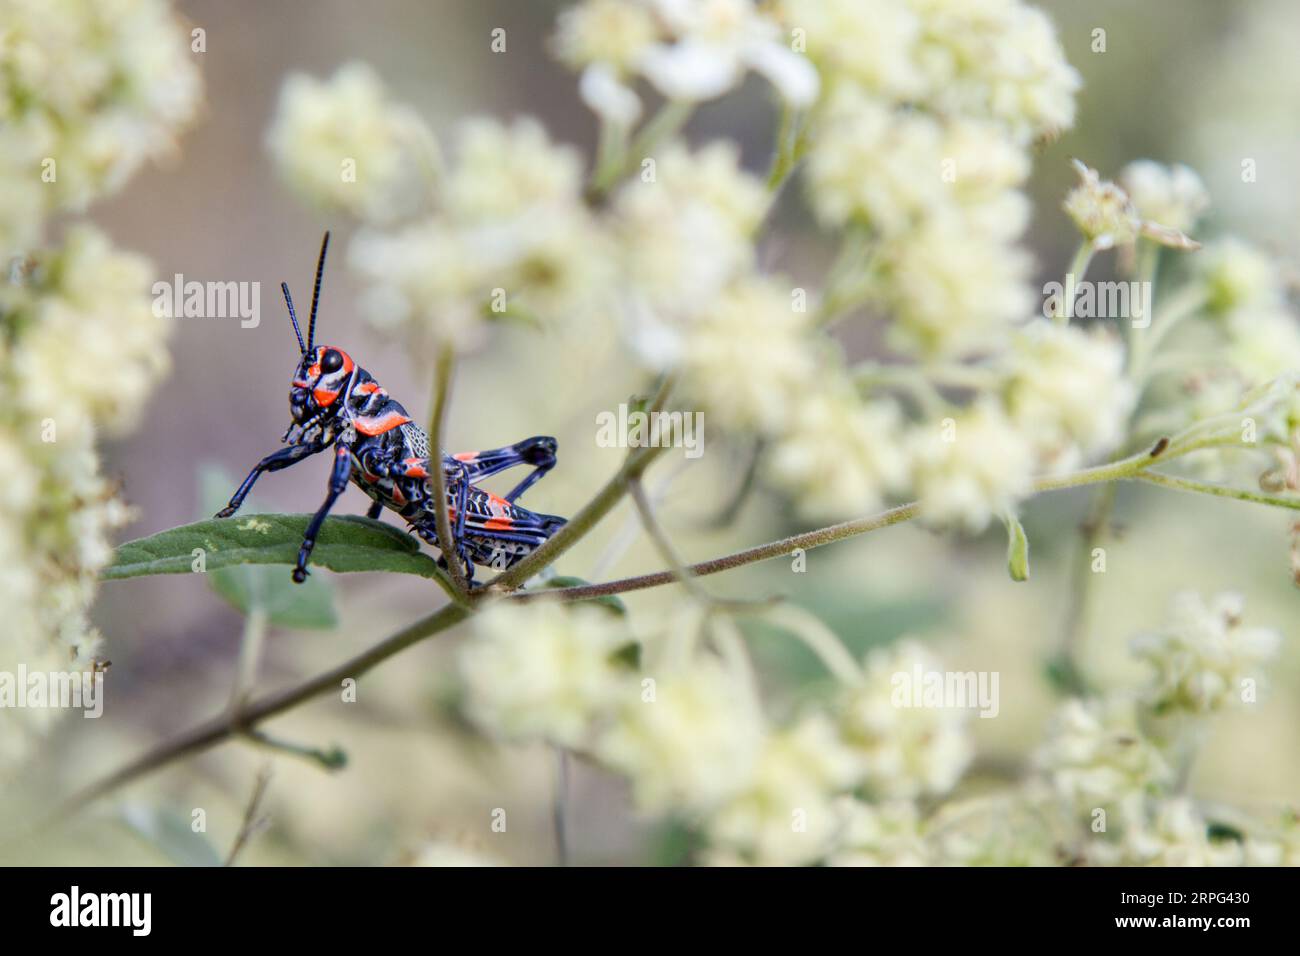 Chapulín o Grasshopper in piedi su un impianto. Blu un insetto rosso. Foto Stock